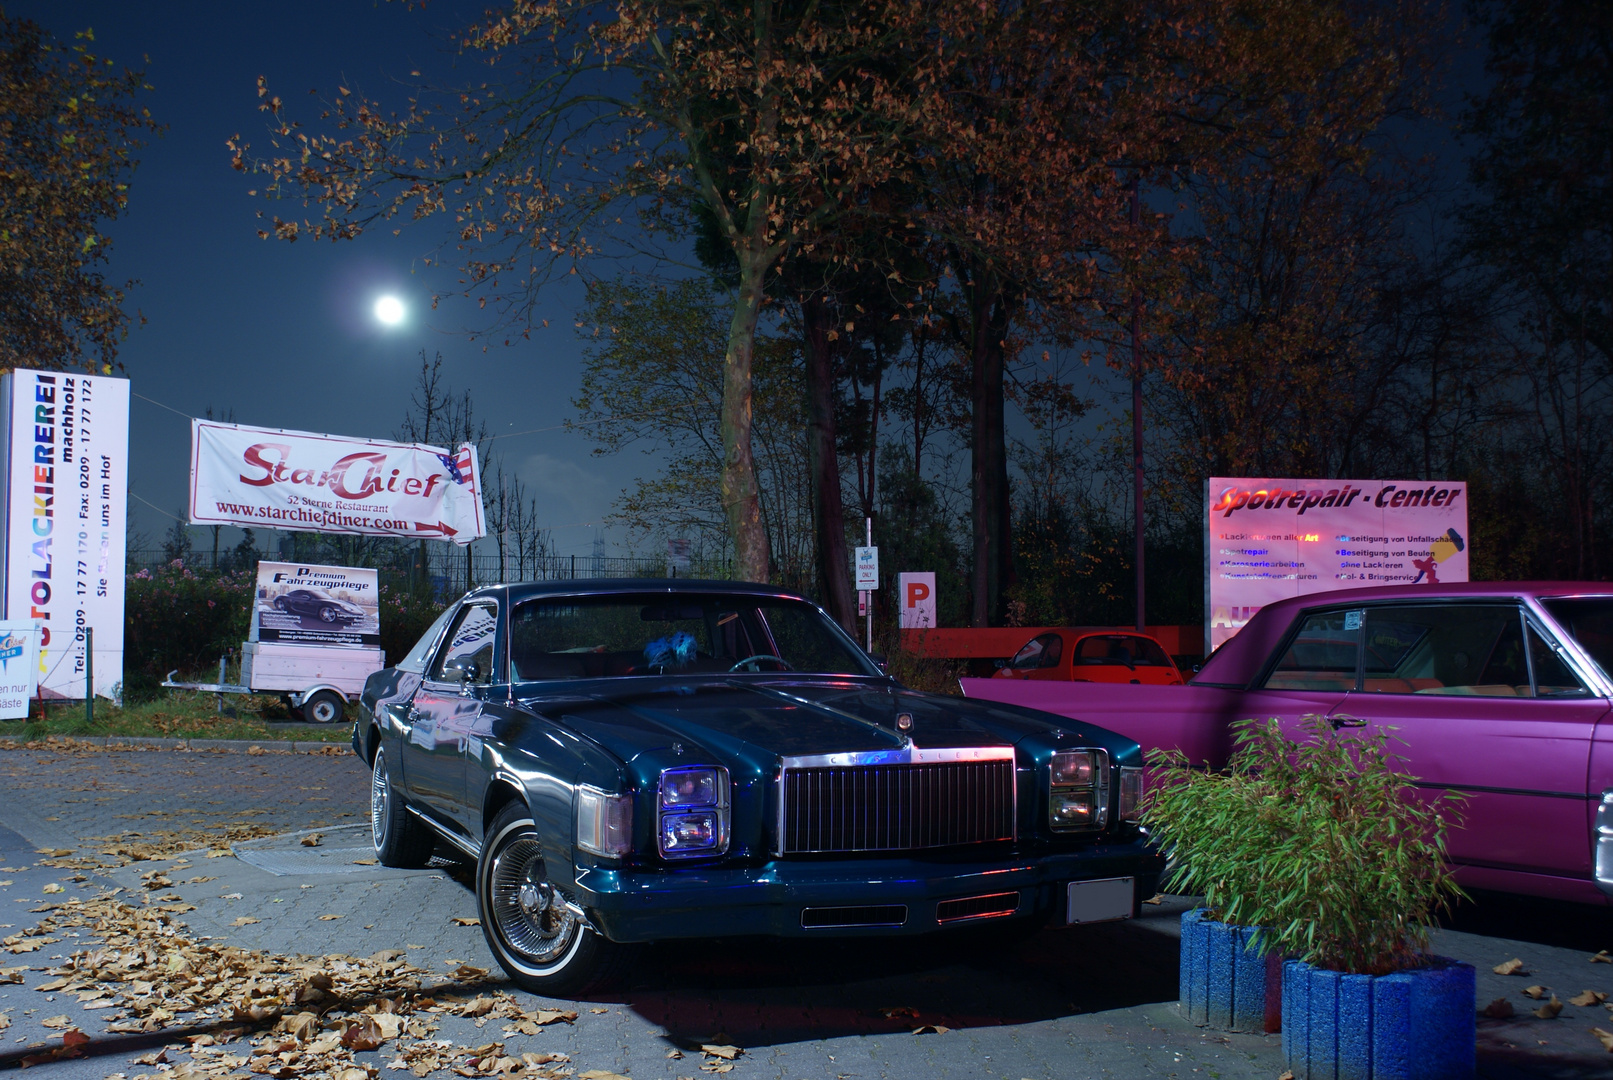 1979 Chrysler Cordoba bei Nacht...